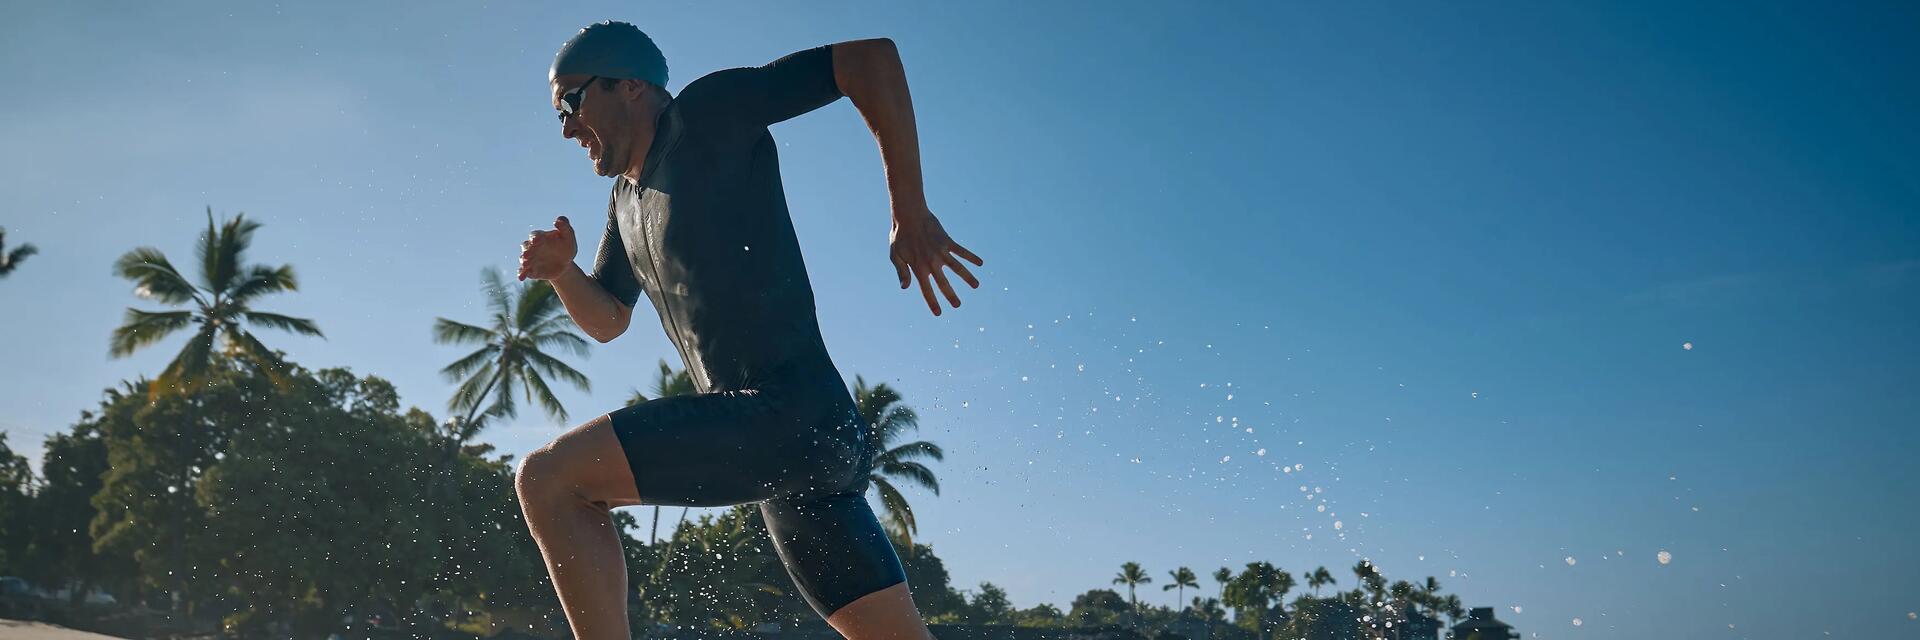 Mężczyzna wybiegający z wody podczas zawodów swimrun